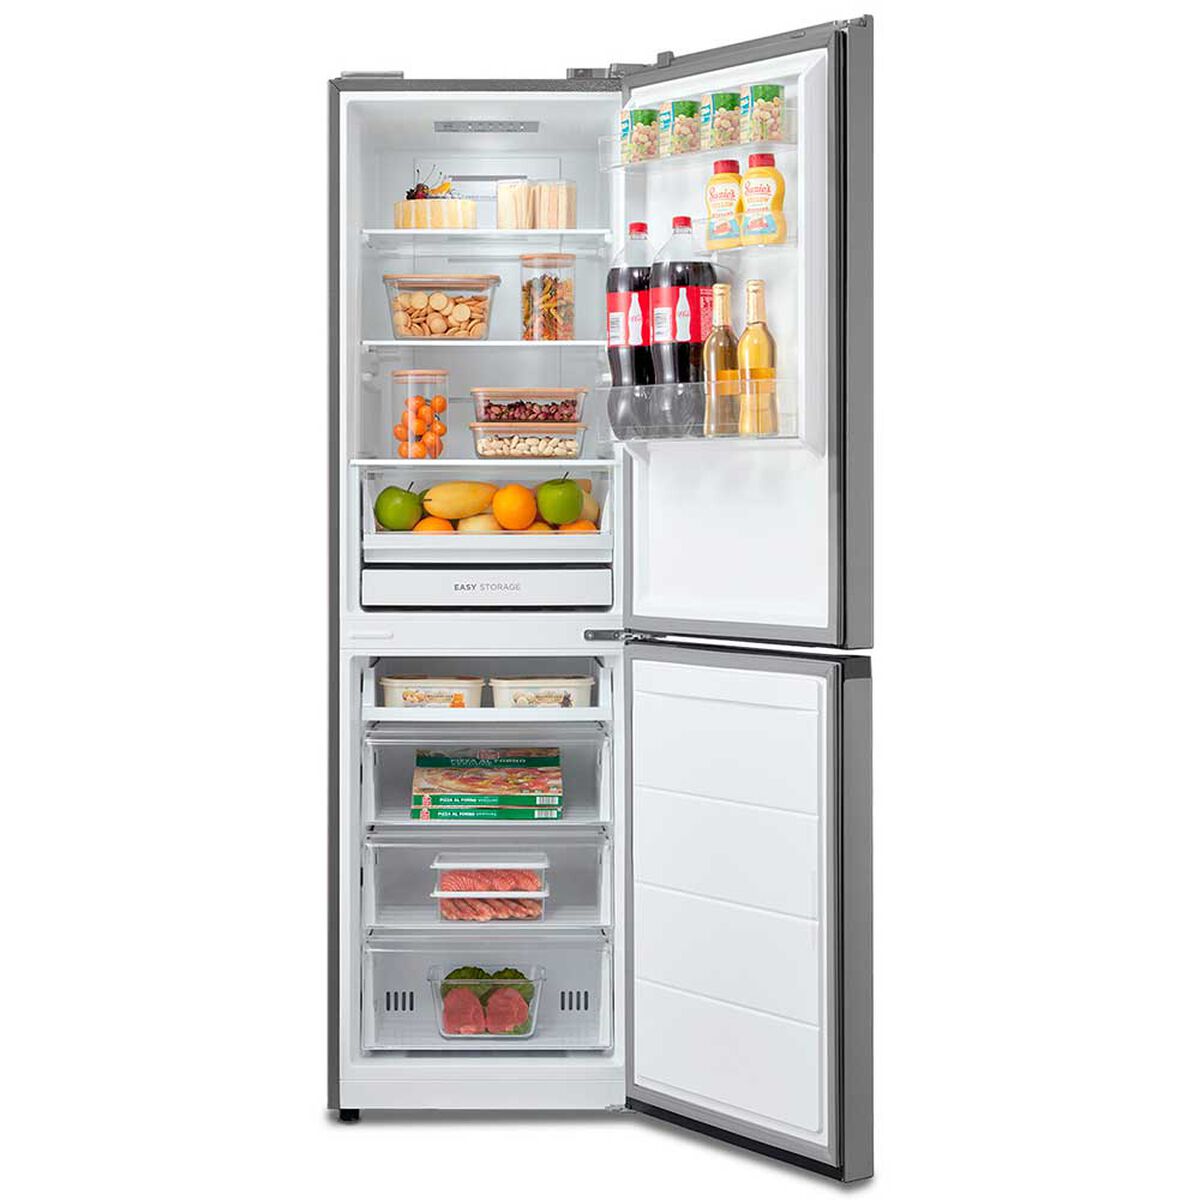 Refrigerador No Frost Midea MDRB379FGF50 259 lts.